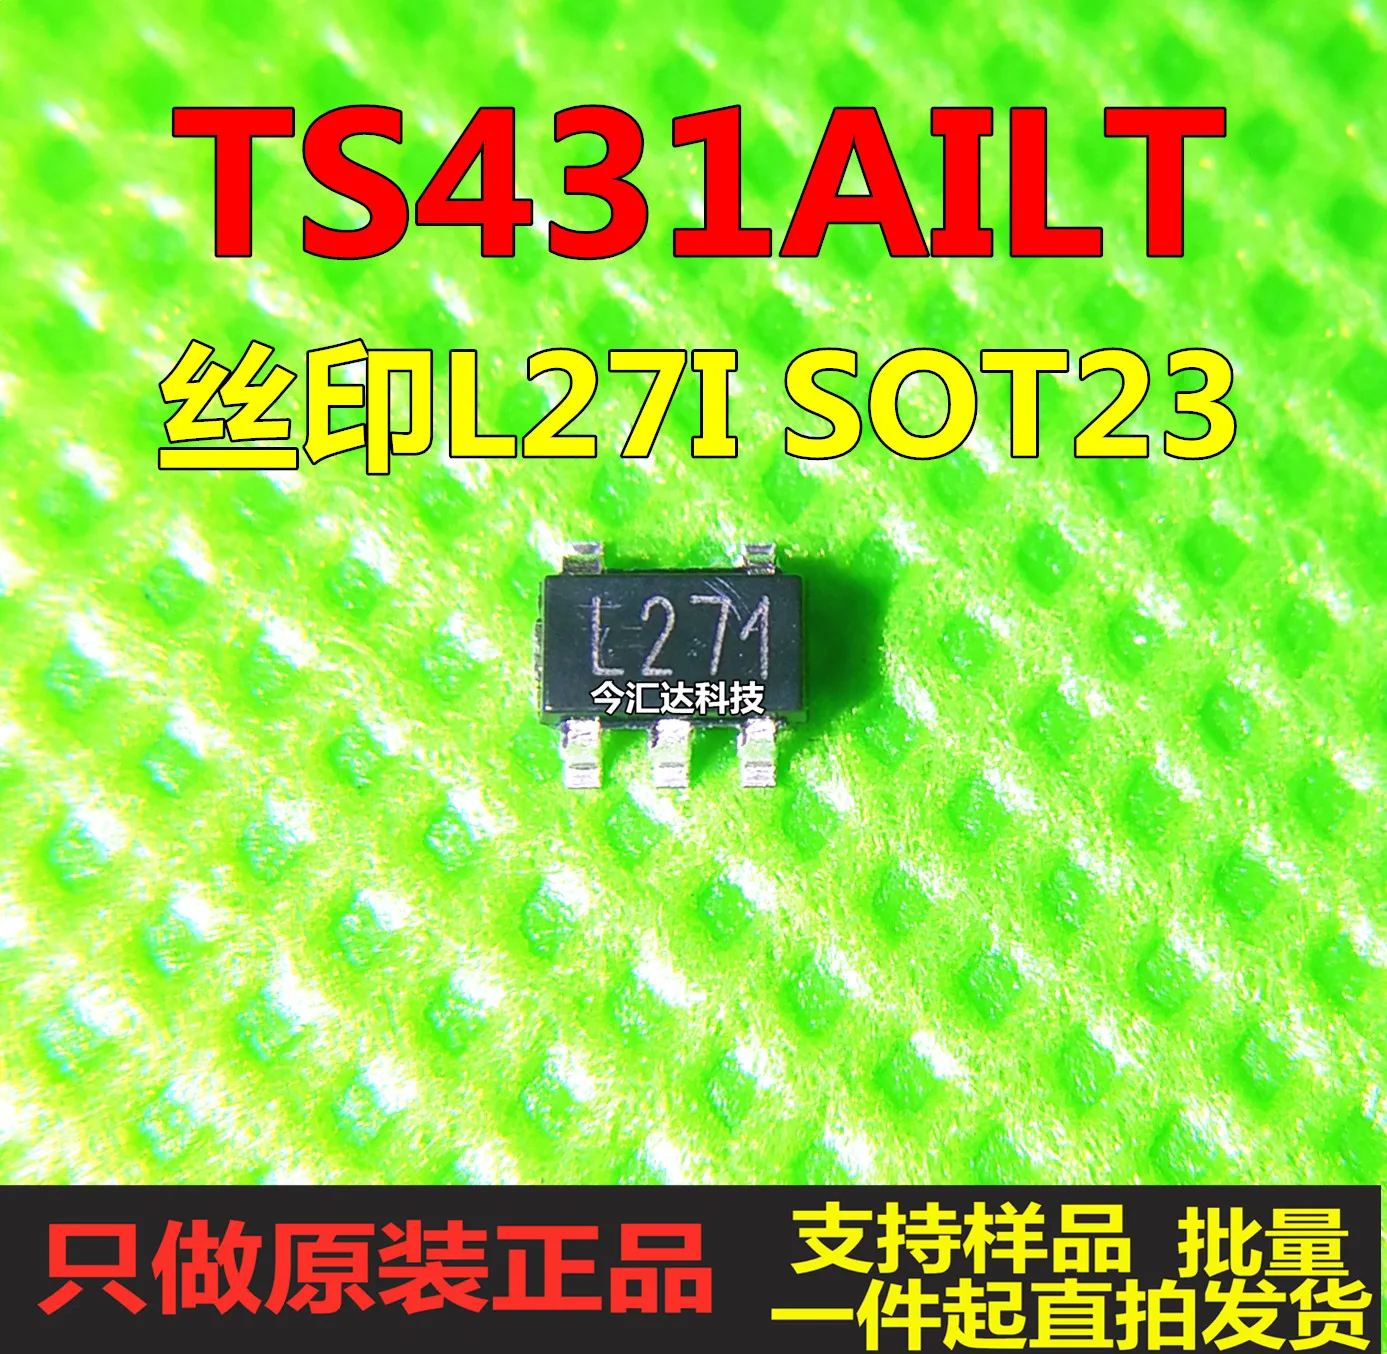 

30pcs original new 30pcs original new TS431AILT SOT23-5 screen printing L271 PMIC - voltage reference